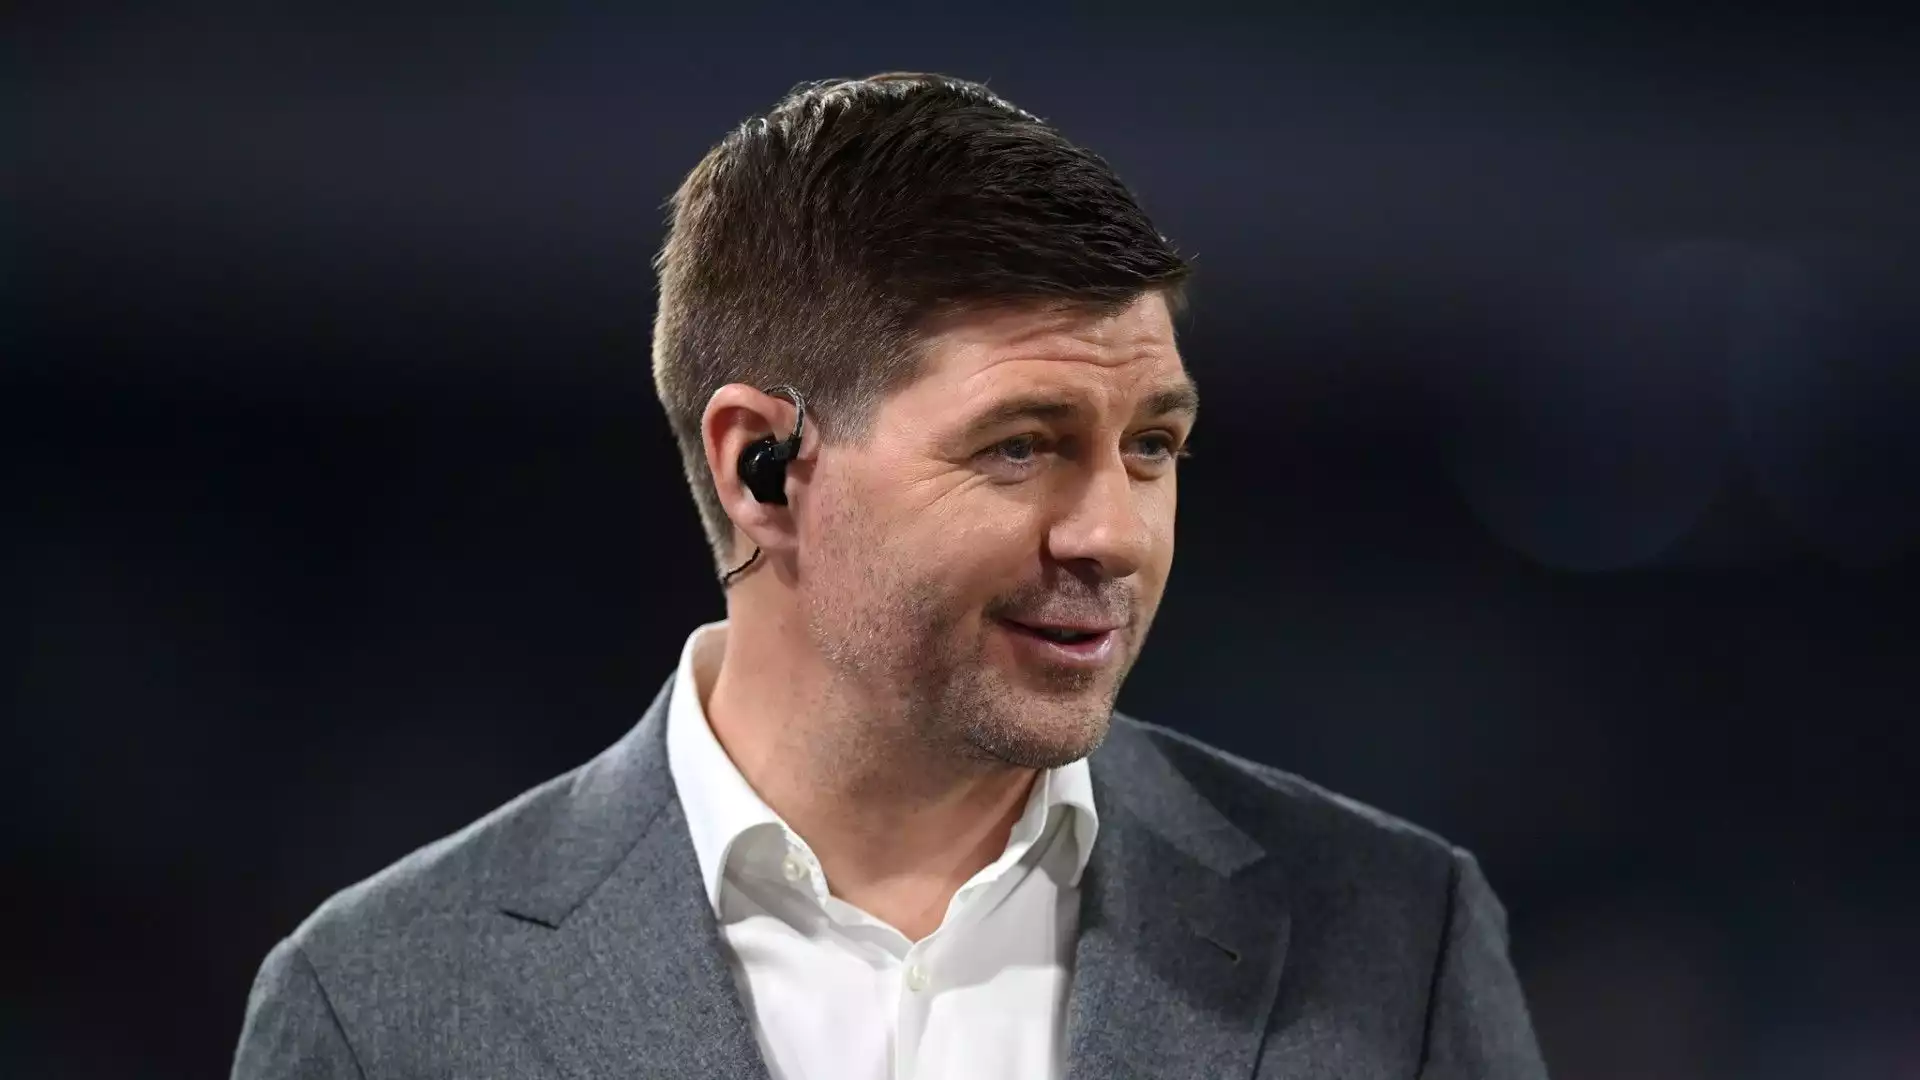 Steven Gerrard si è recato per sua stessa ammissione in Arabia Saudita, ha valutato l'offerta che gli è stata fatta ma successivamente ha deciso di rifiutare